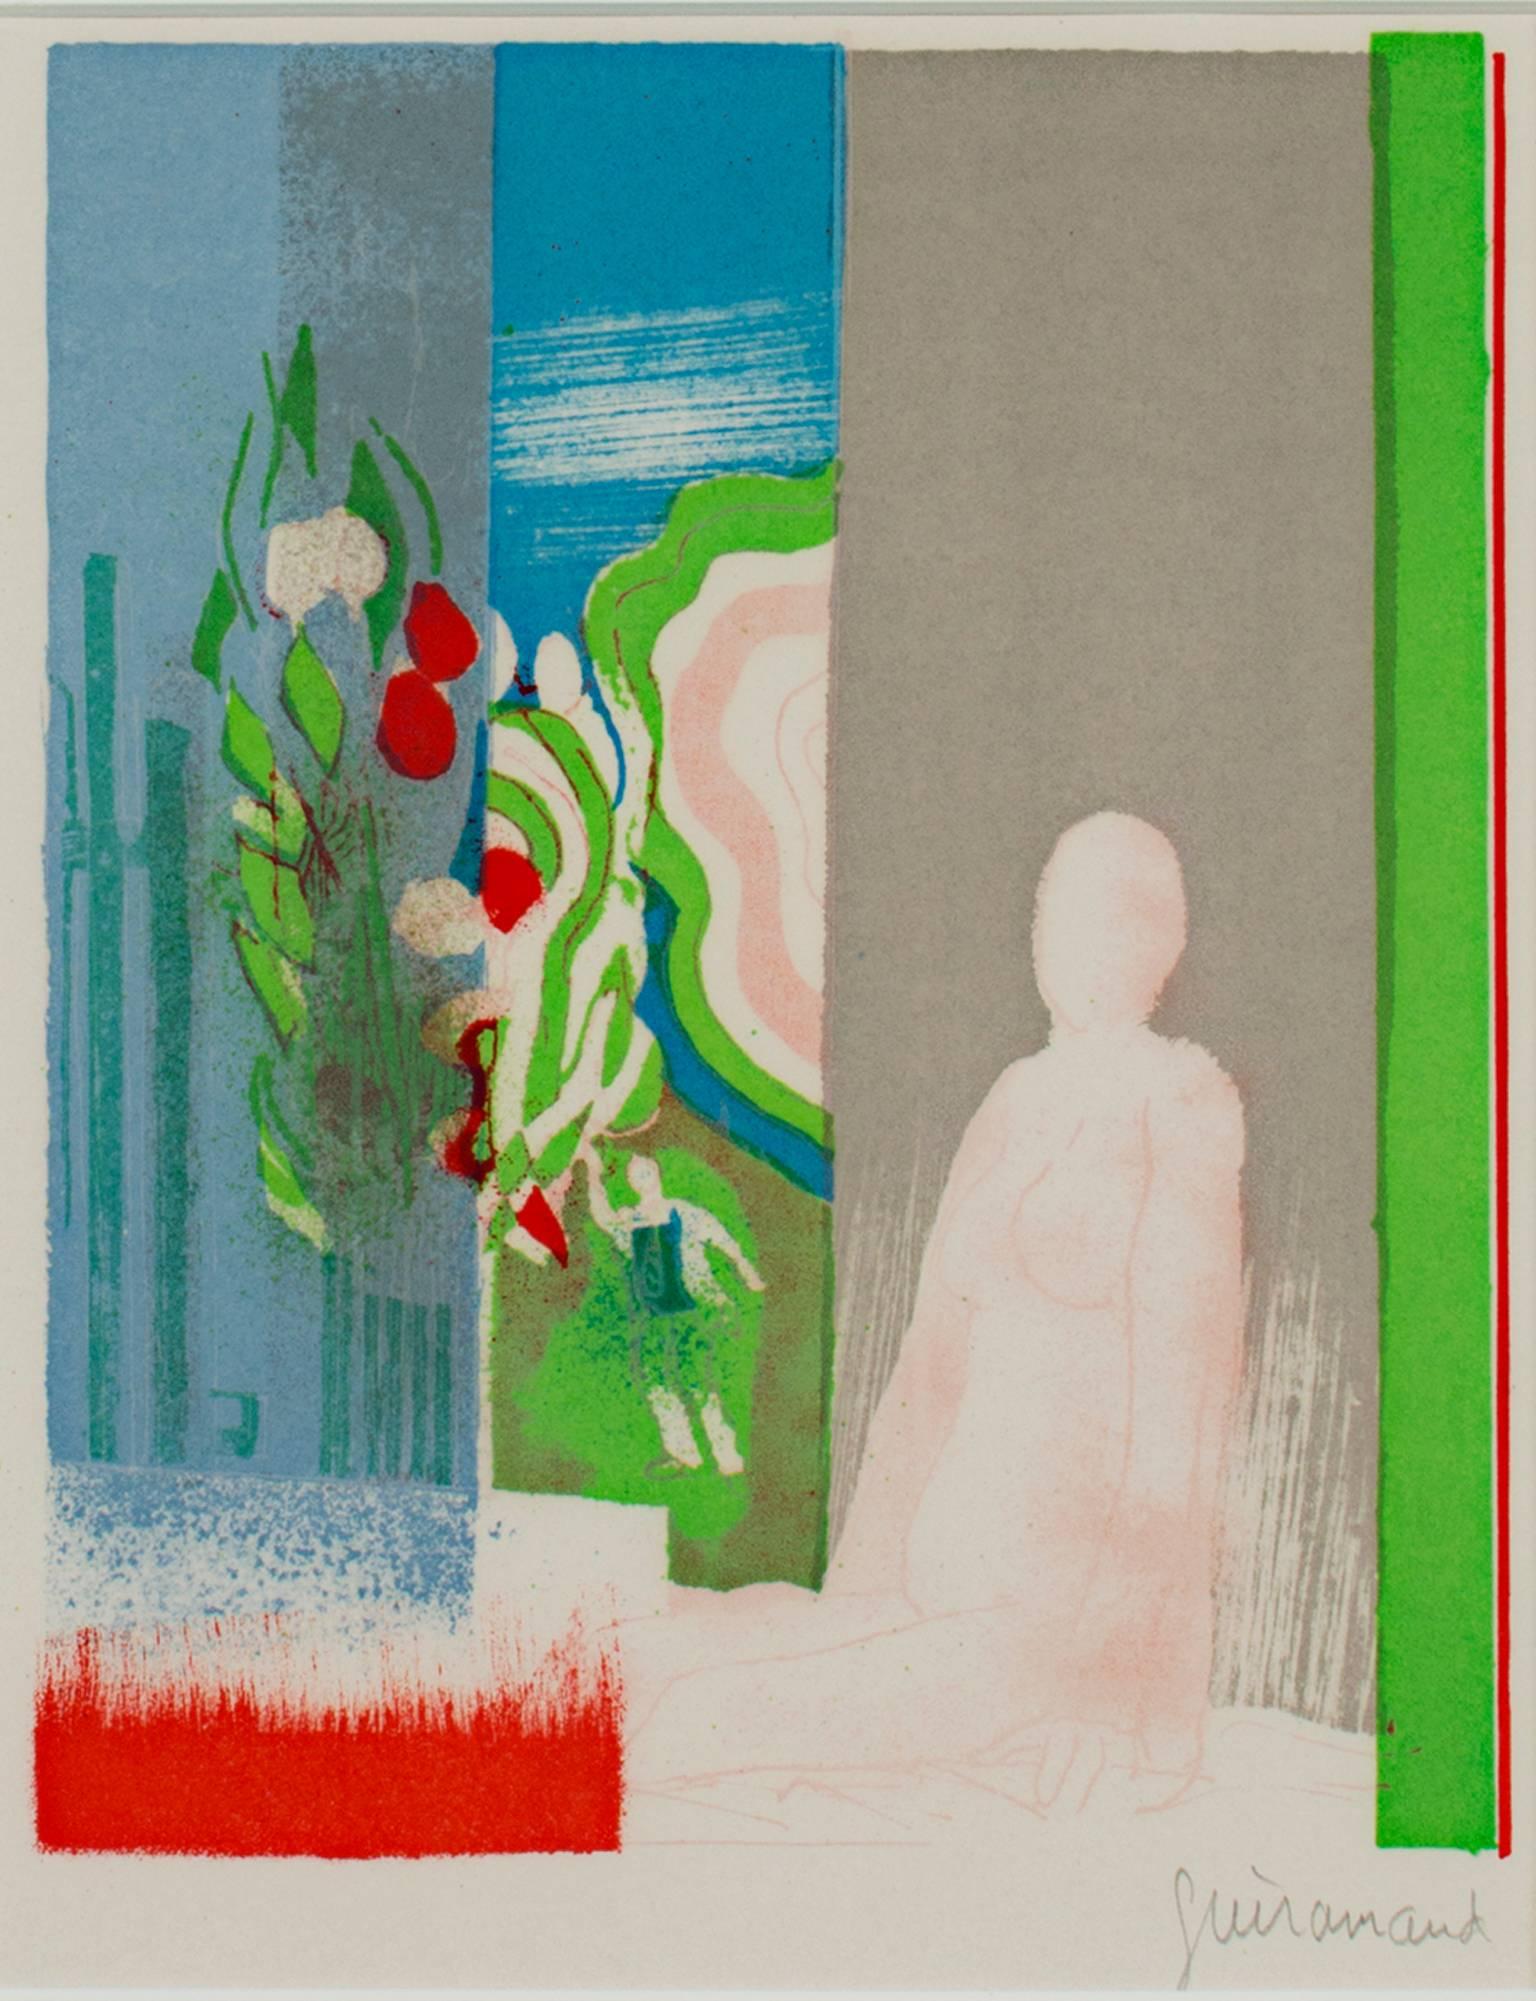 "Akt (Bonjour)" ist eine originale Farblithographie von Paul Guiramand. Der Künstler hat das Werk unten rechts signiert. Dieses Stück stammt aus einer Auflage von 600 Stück. Es zeigt eine nackte weibliche Figur, die an einer Wand sitzt, mit einigen